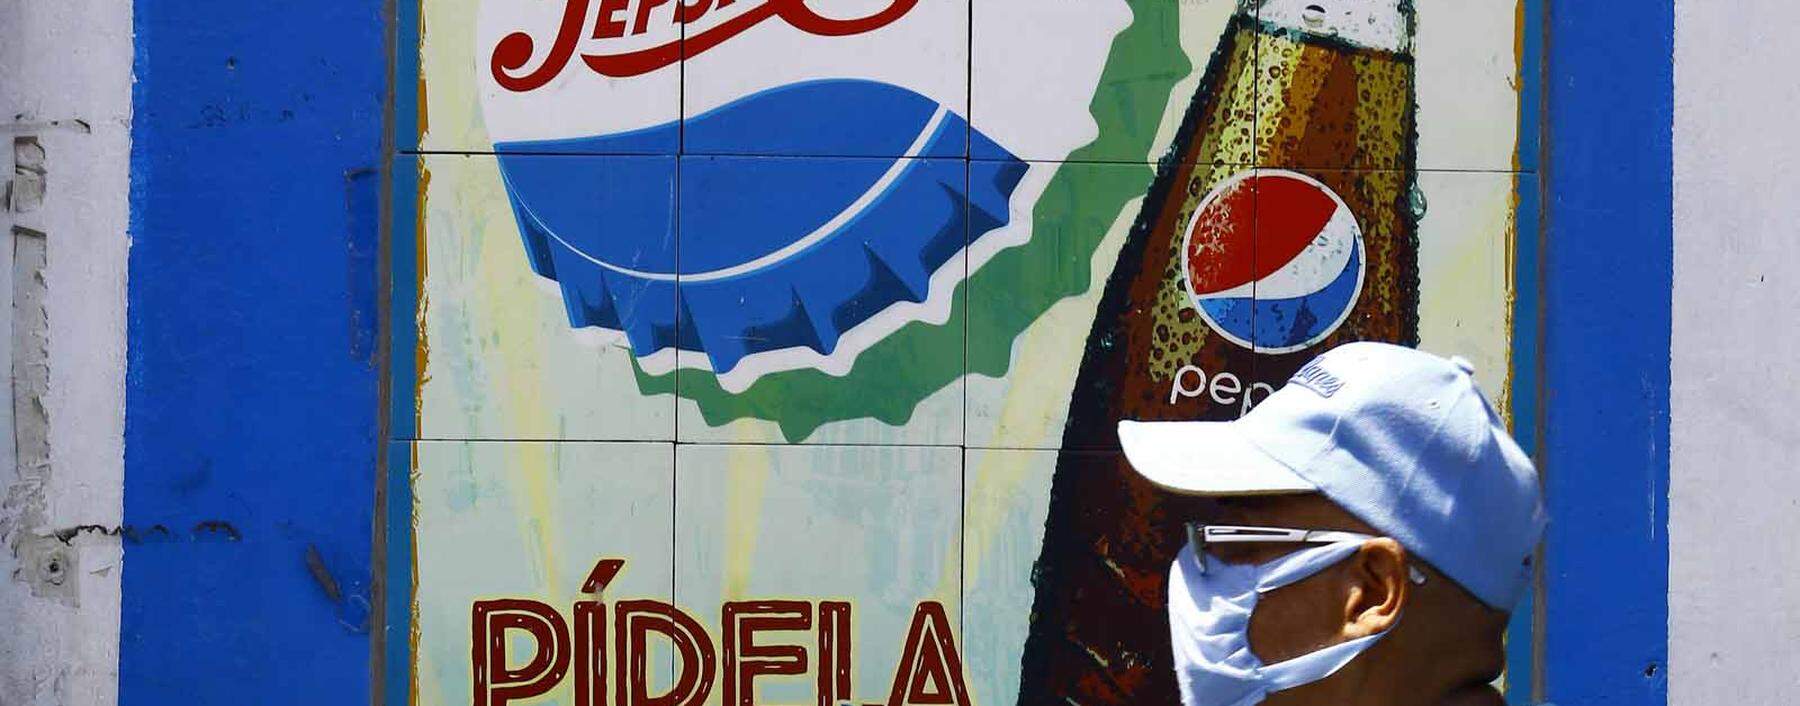 Pepsi-Cola zählt zu jenen Firmen, die Manager von Dividendenfonds im Blick haben. 